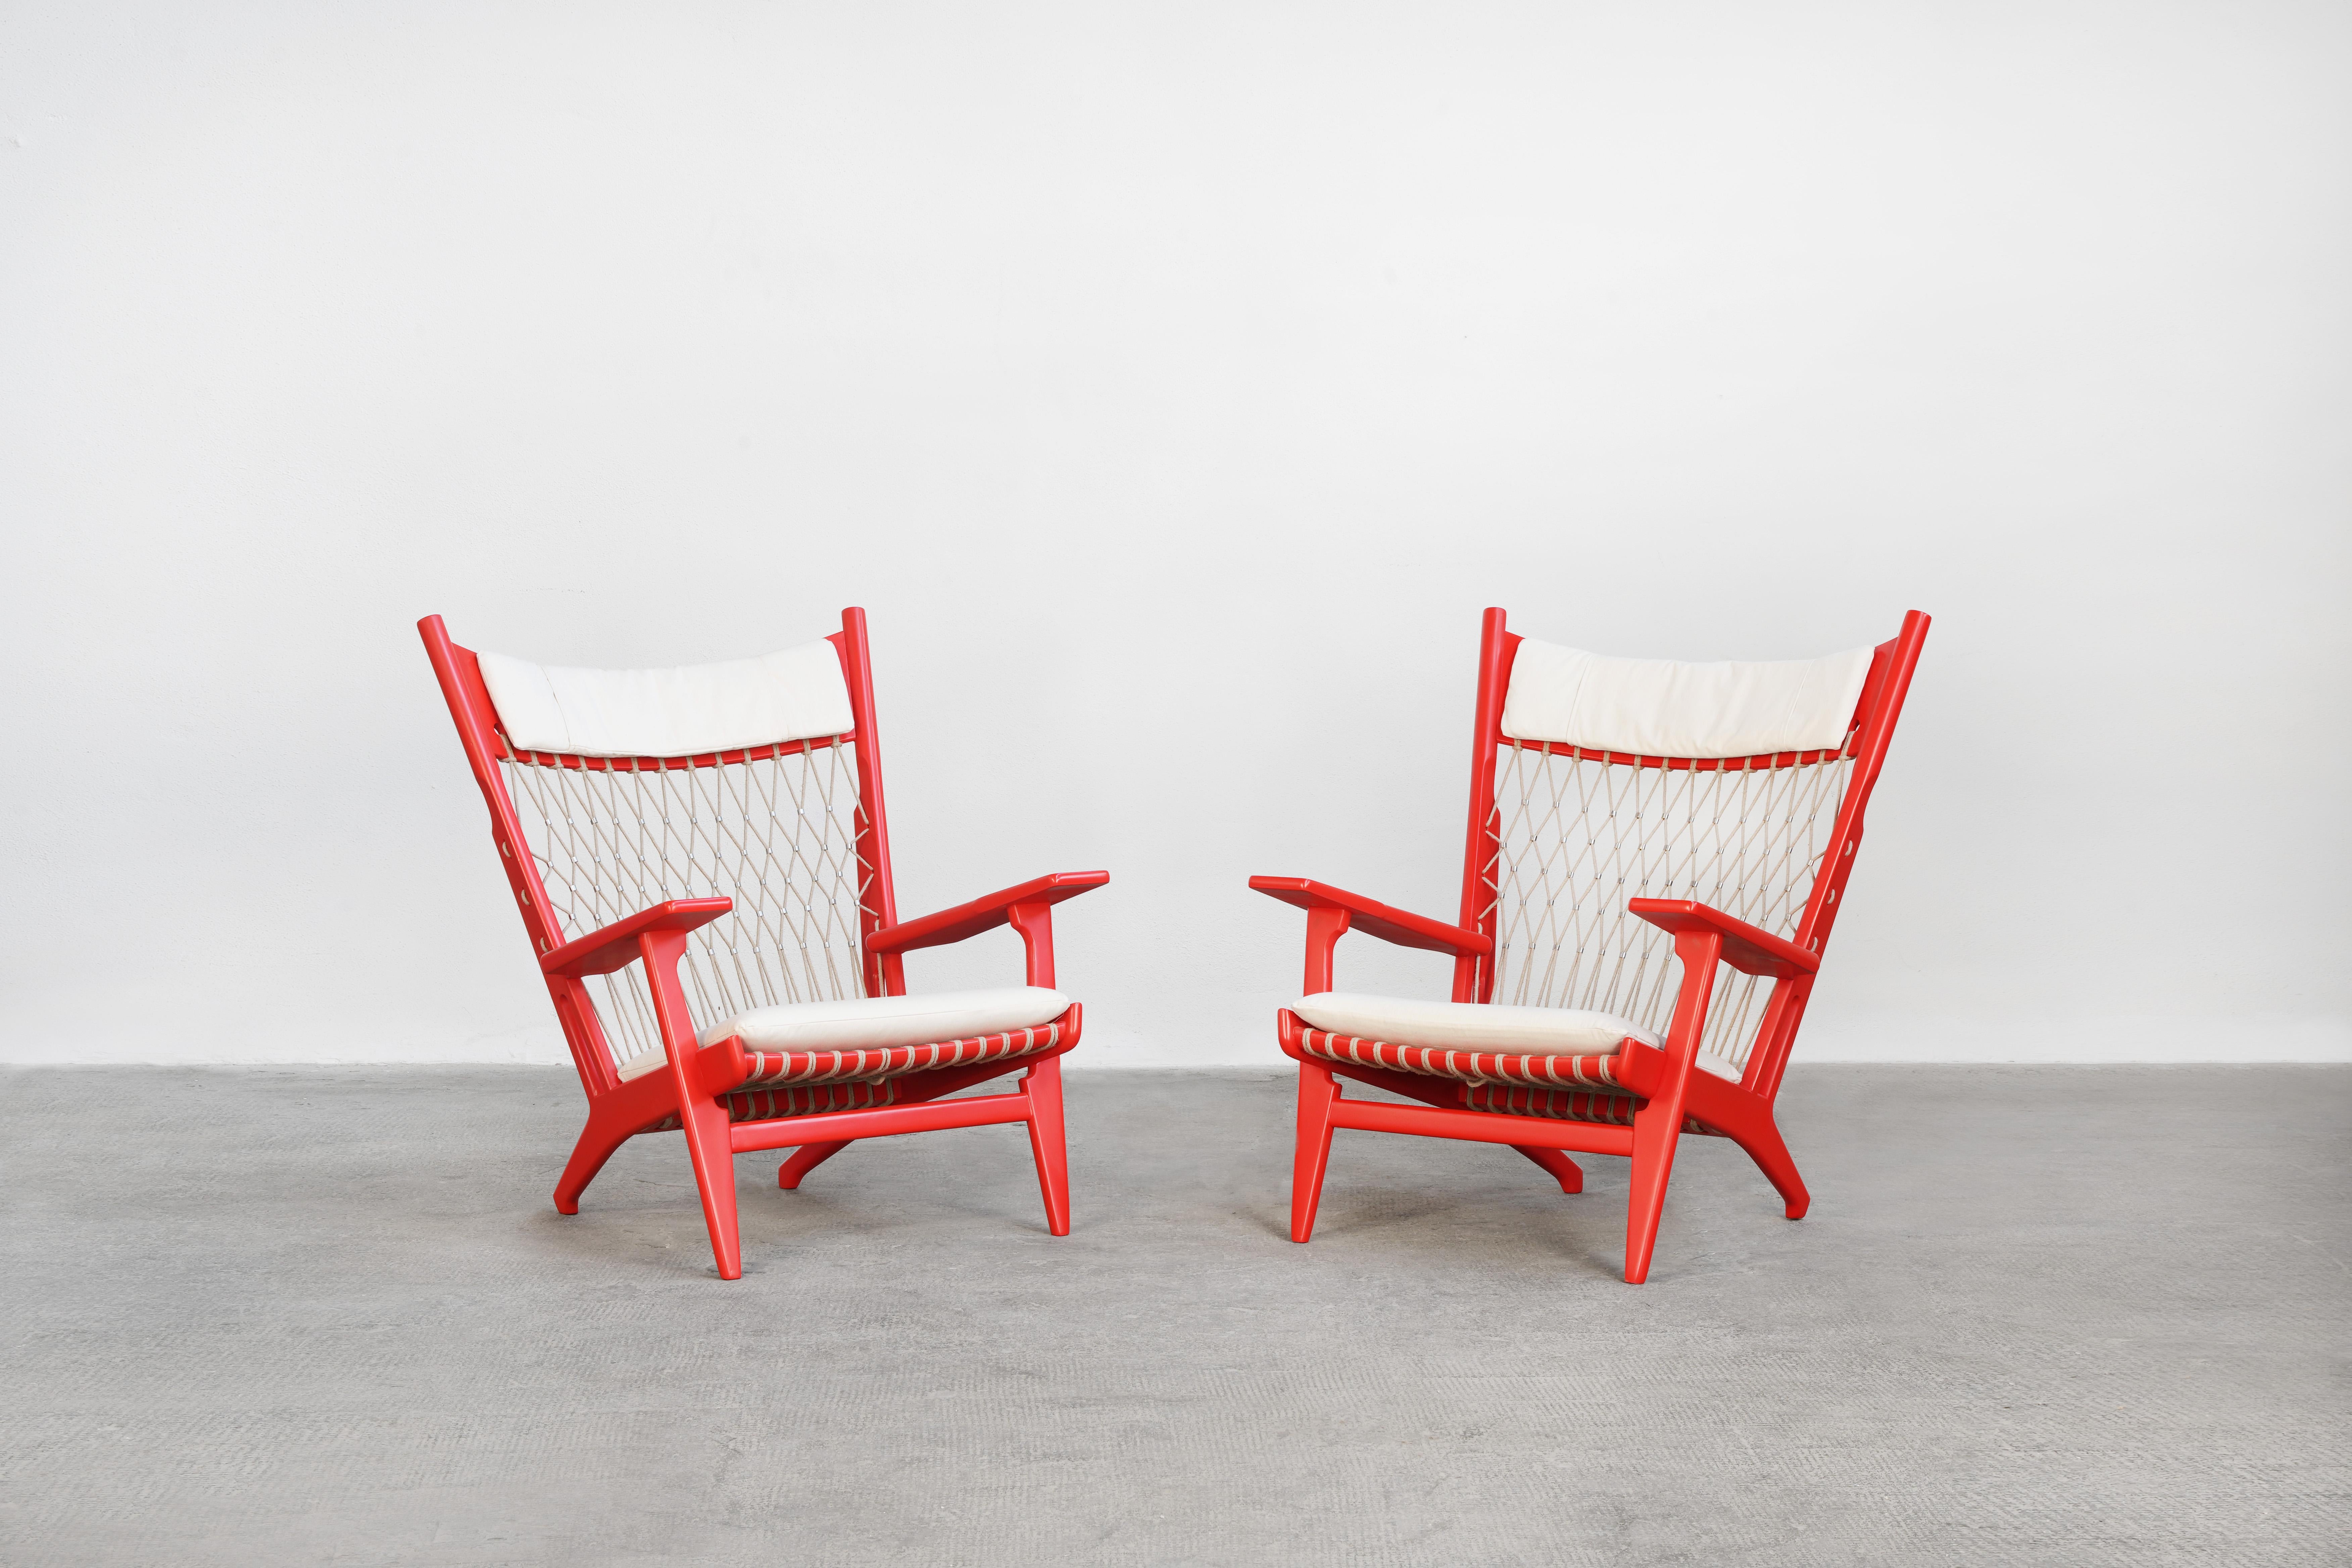 Schönes Paar dänischer Sessel, entworfen von Hans J. Wegner und hergestellt von Johannes Hansen. 
Diese seltenen Loungesessel befinden sich in einem ausgezeichneten restaurierten Zustand mit losen Sitz- und Nackenkissen, die mit einem hochwertigen